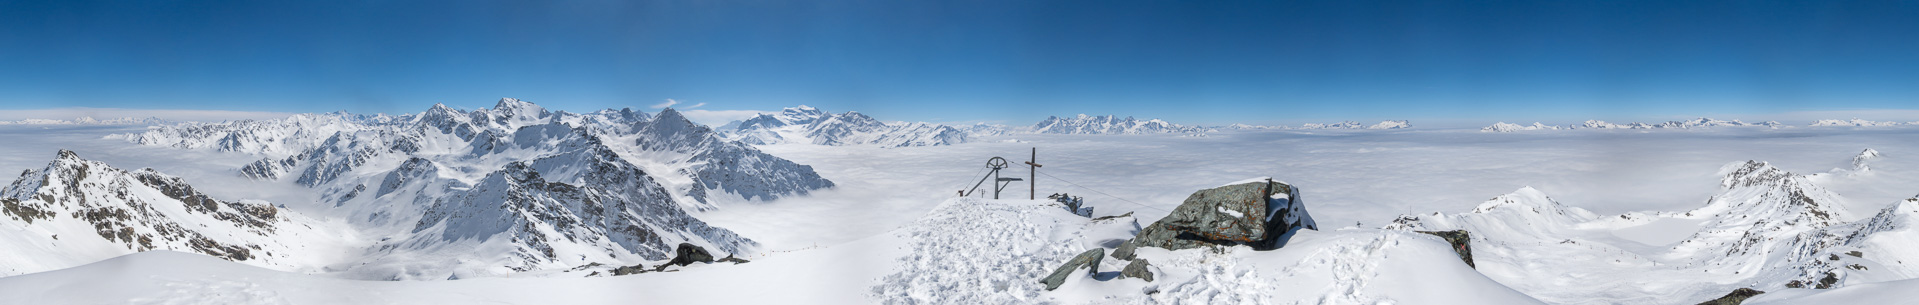 Gipfelpanorama über dem Wolkenmeer mit Berner Alpen, Grand Combin und Mont Blanc.